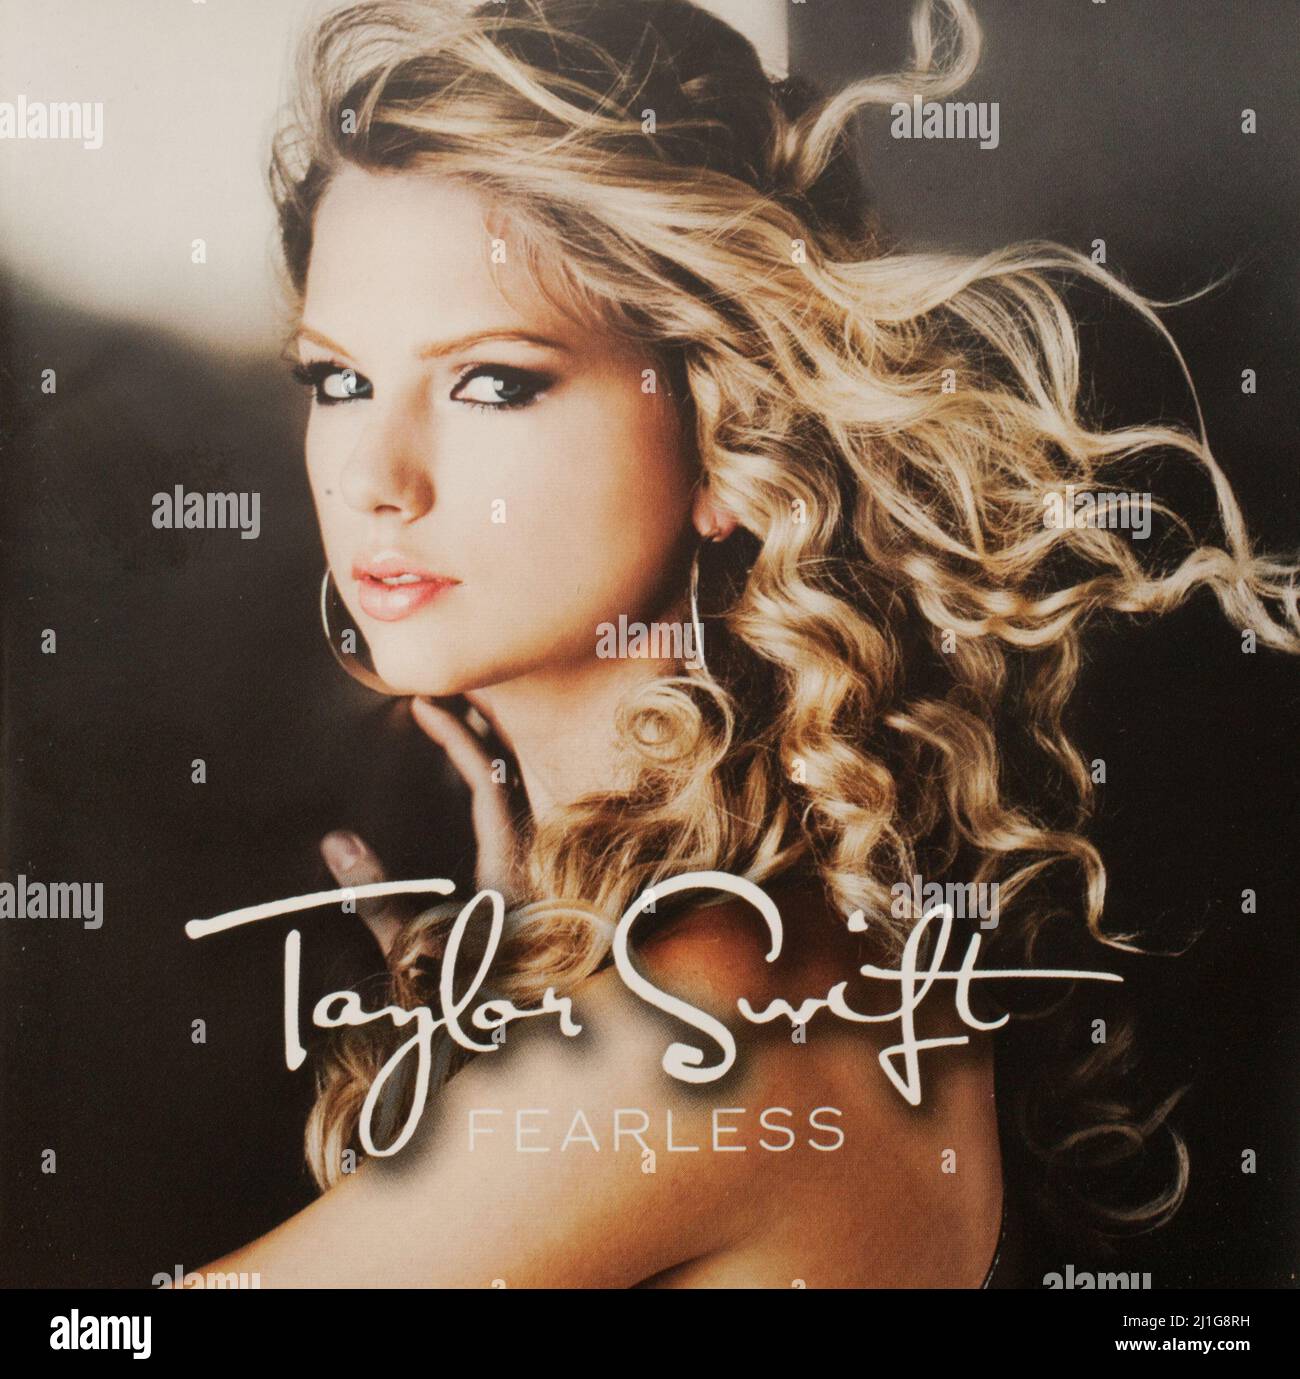 La portada del álbum del CD a Fearless de Taylor Swift Fotografía de stock  - Alamy